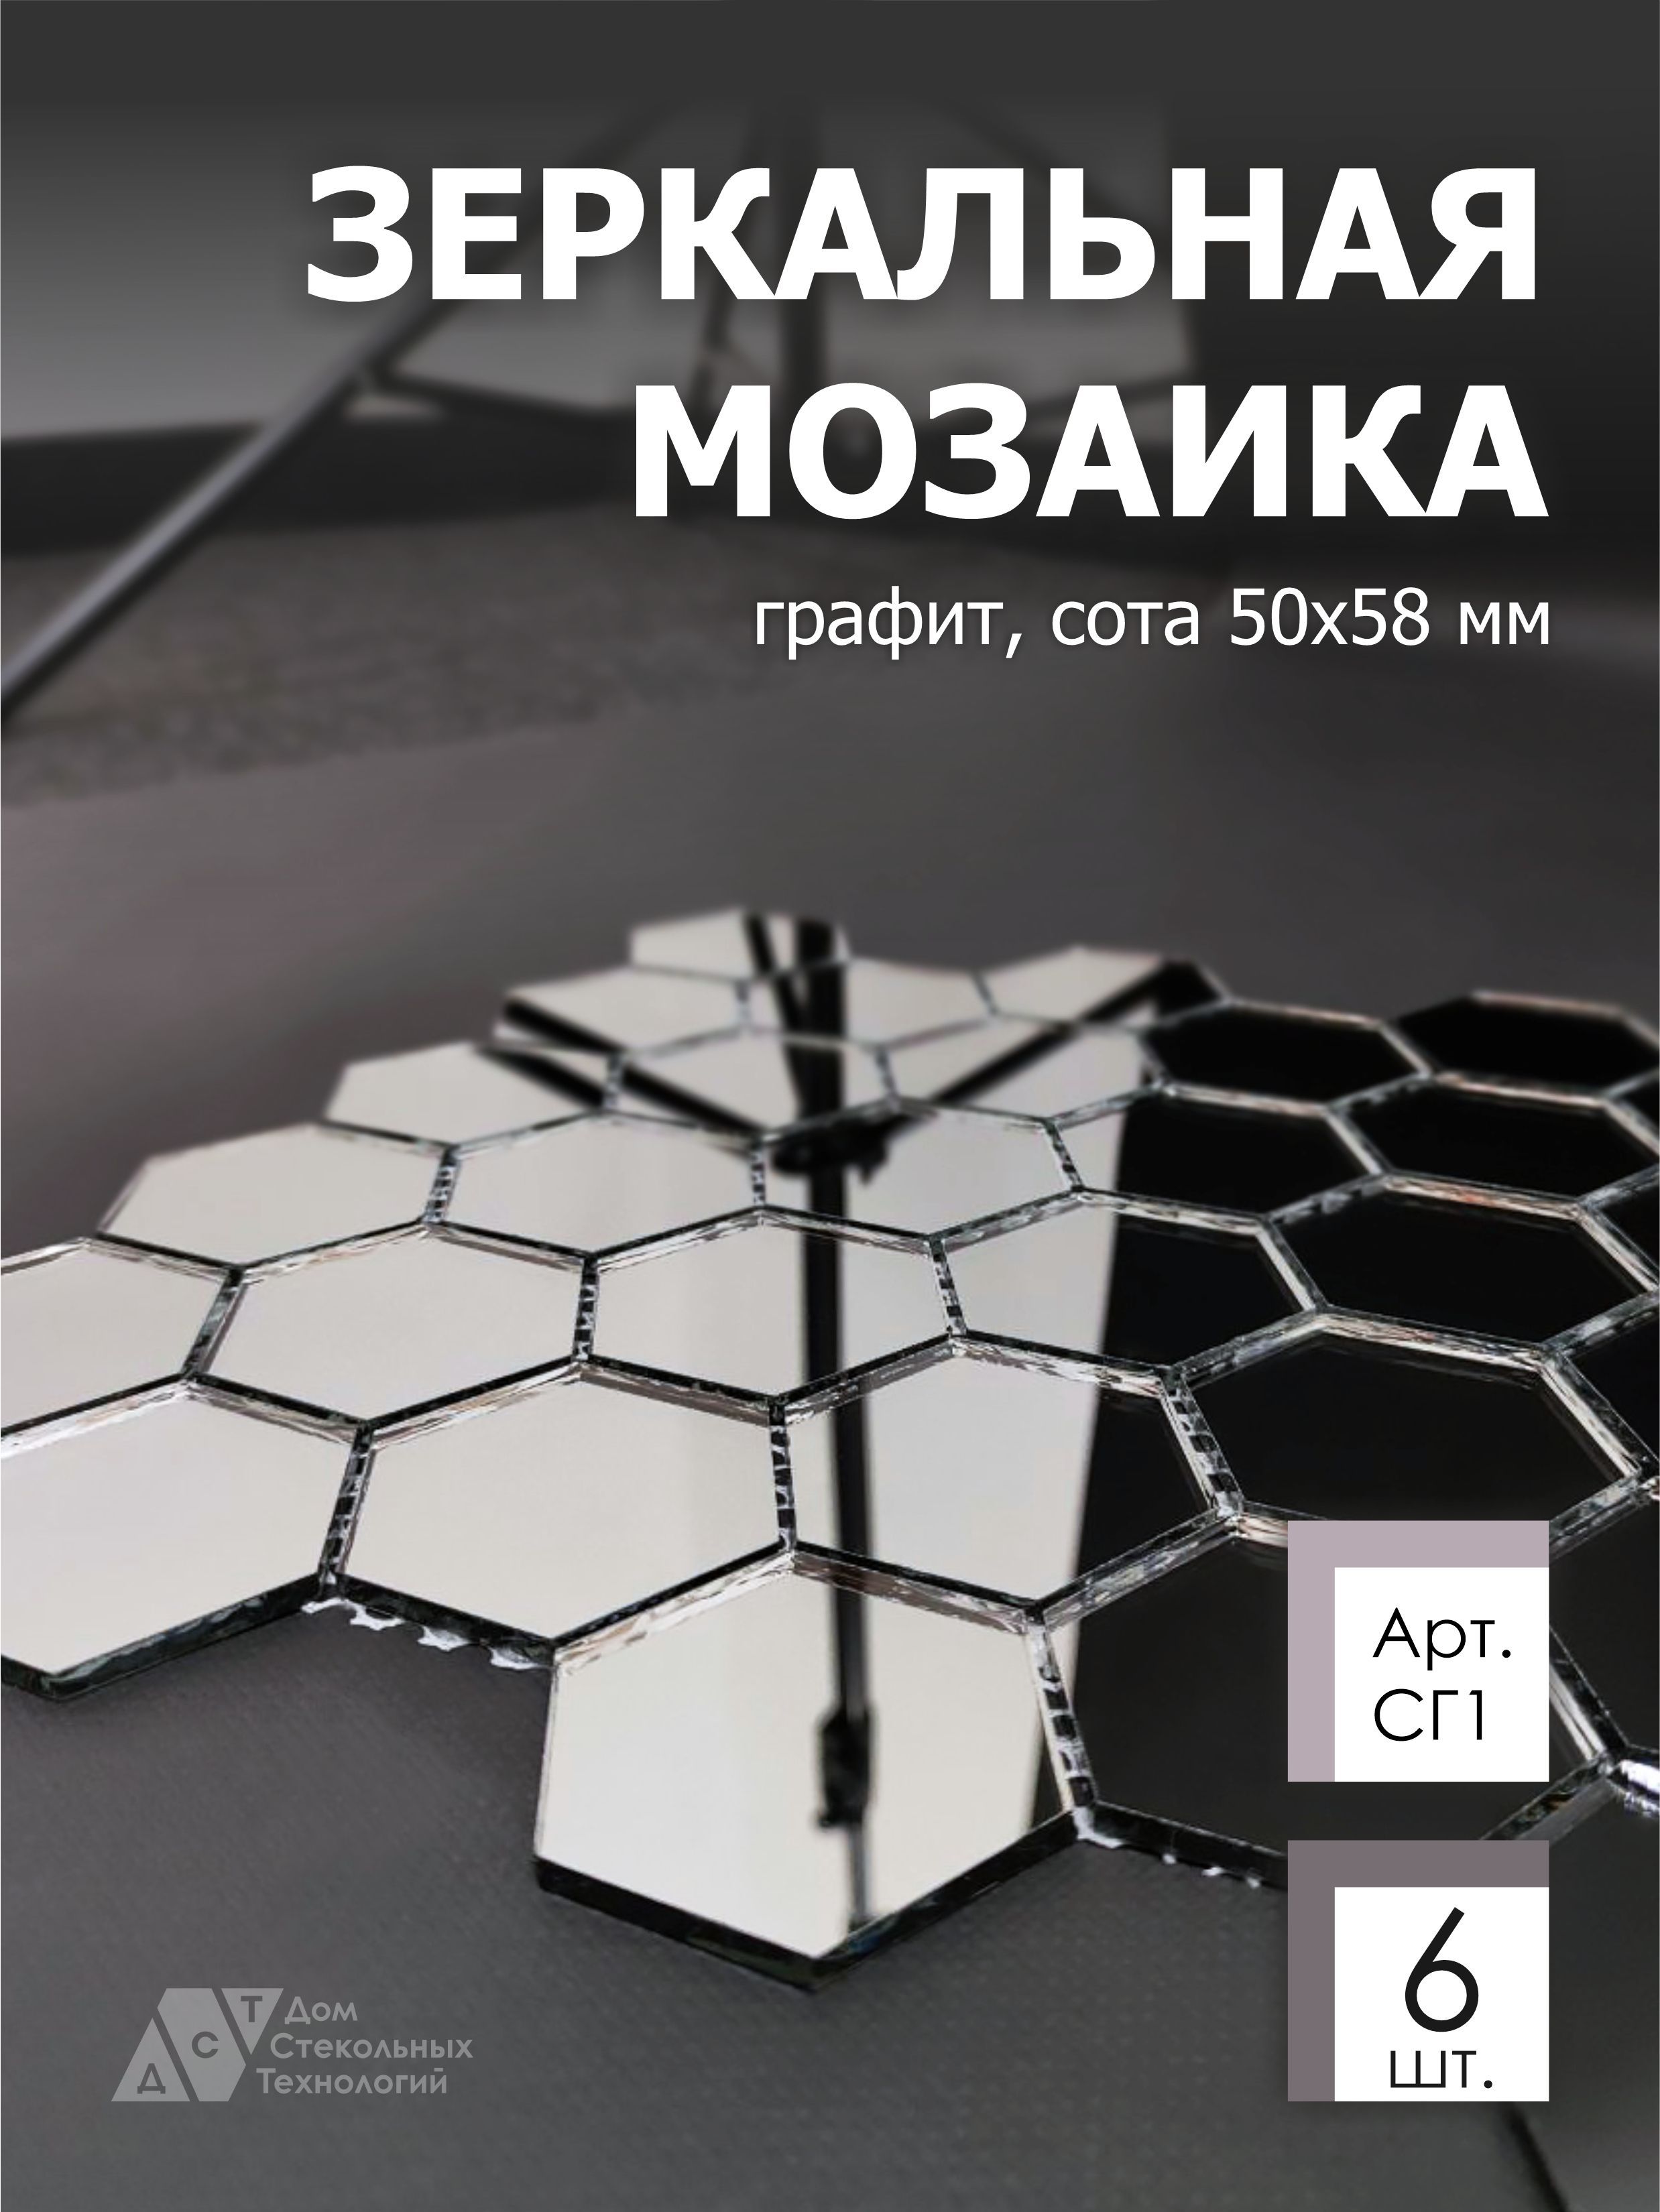 Зеркальная мозаика на сетке ДСТ СГ1 287х287 мм, сота графит 100%, 6 листов